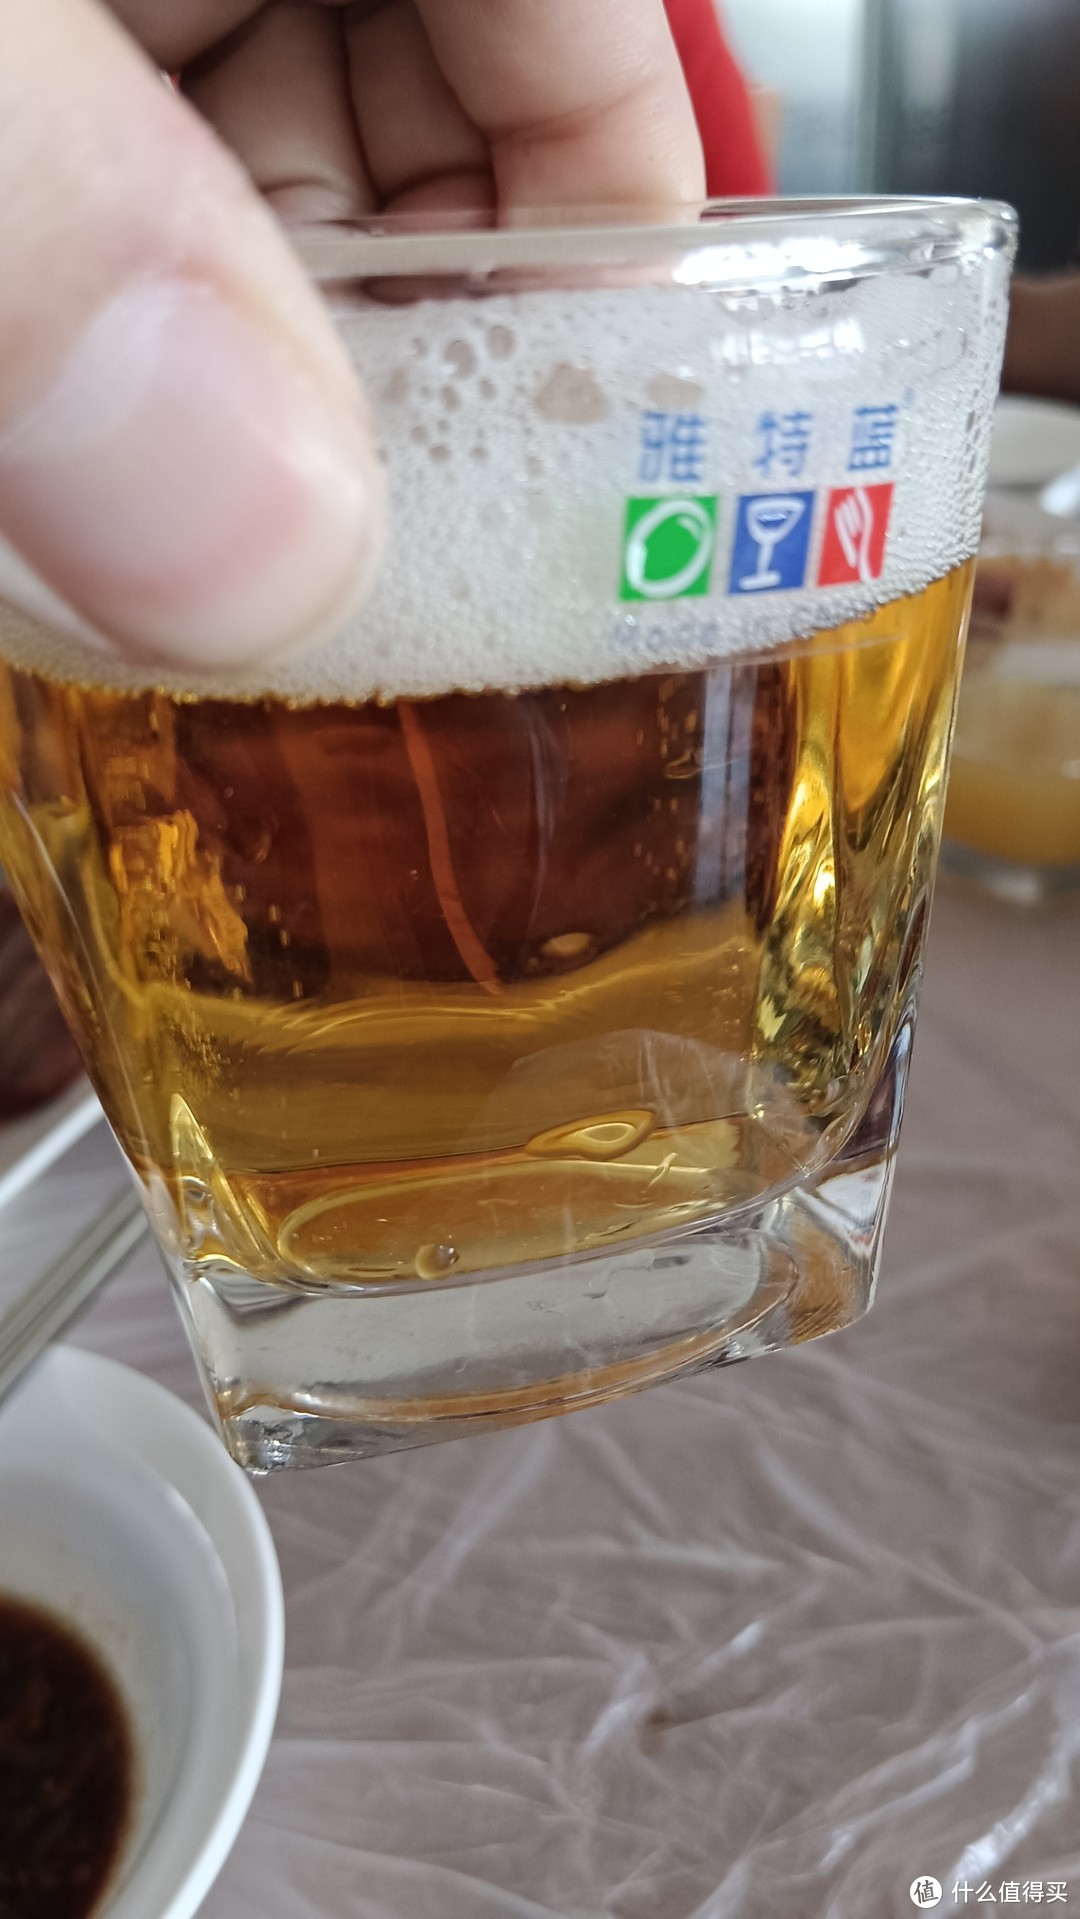 土耳其米勒vs露西亚米勒，哪个拉格啤酒更好喝?不对比喝还真不知道哦